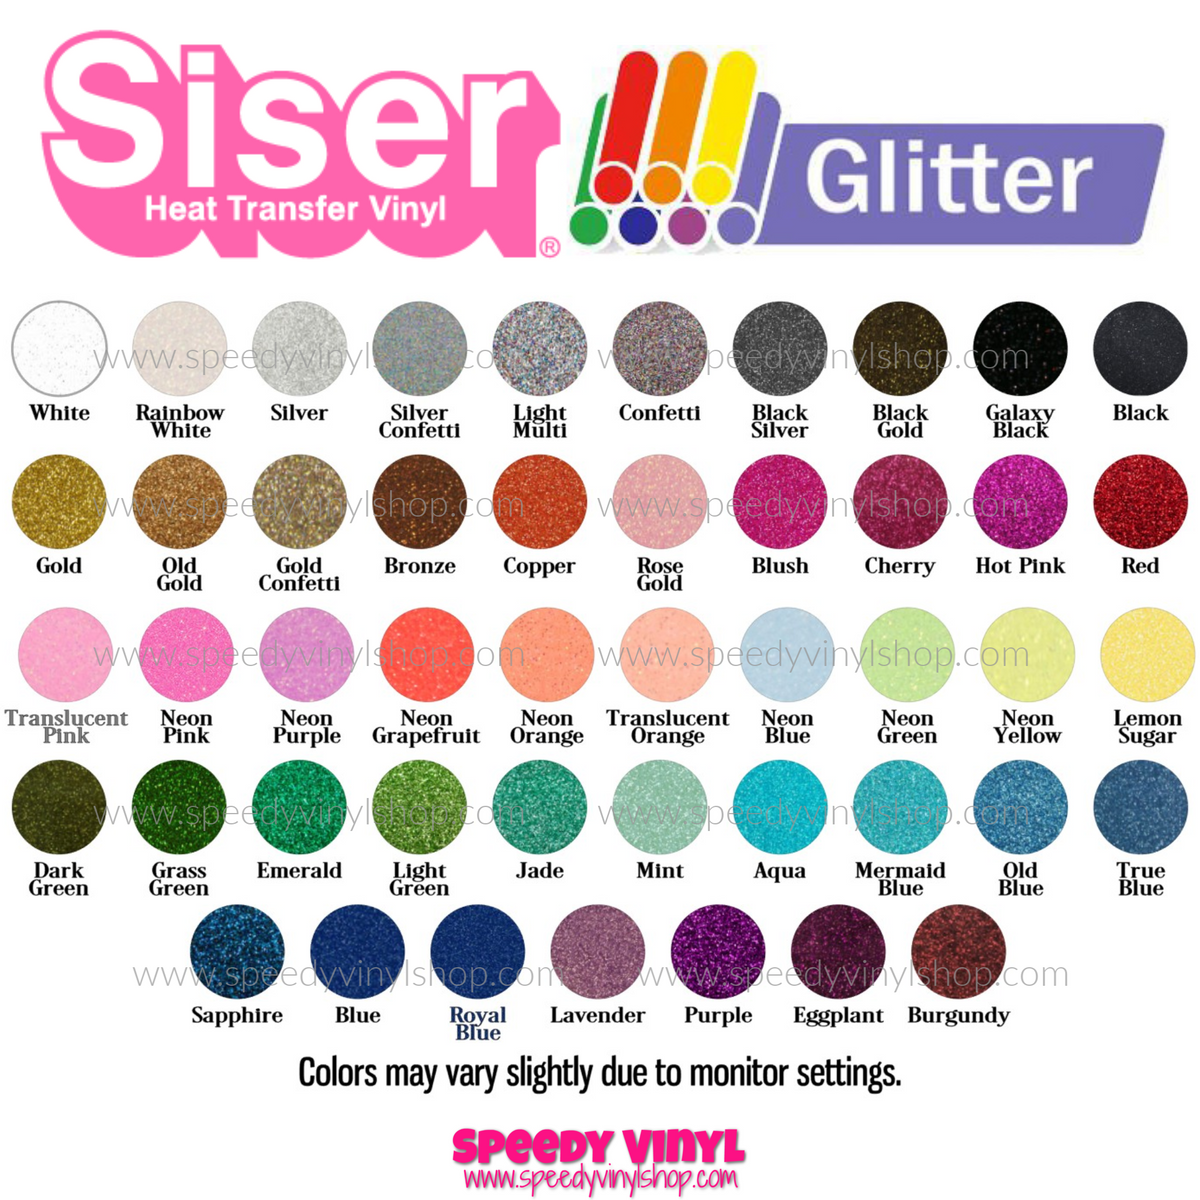 12 x 20))) Siser Glitter HTV Heat Transfer Vinyl Sheets – Speedy Vinyl